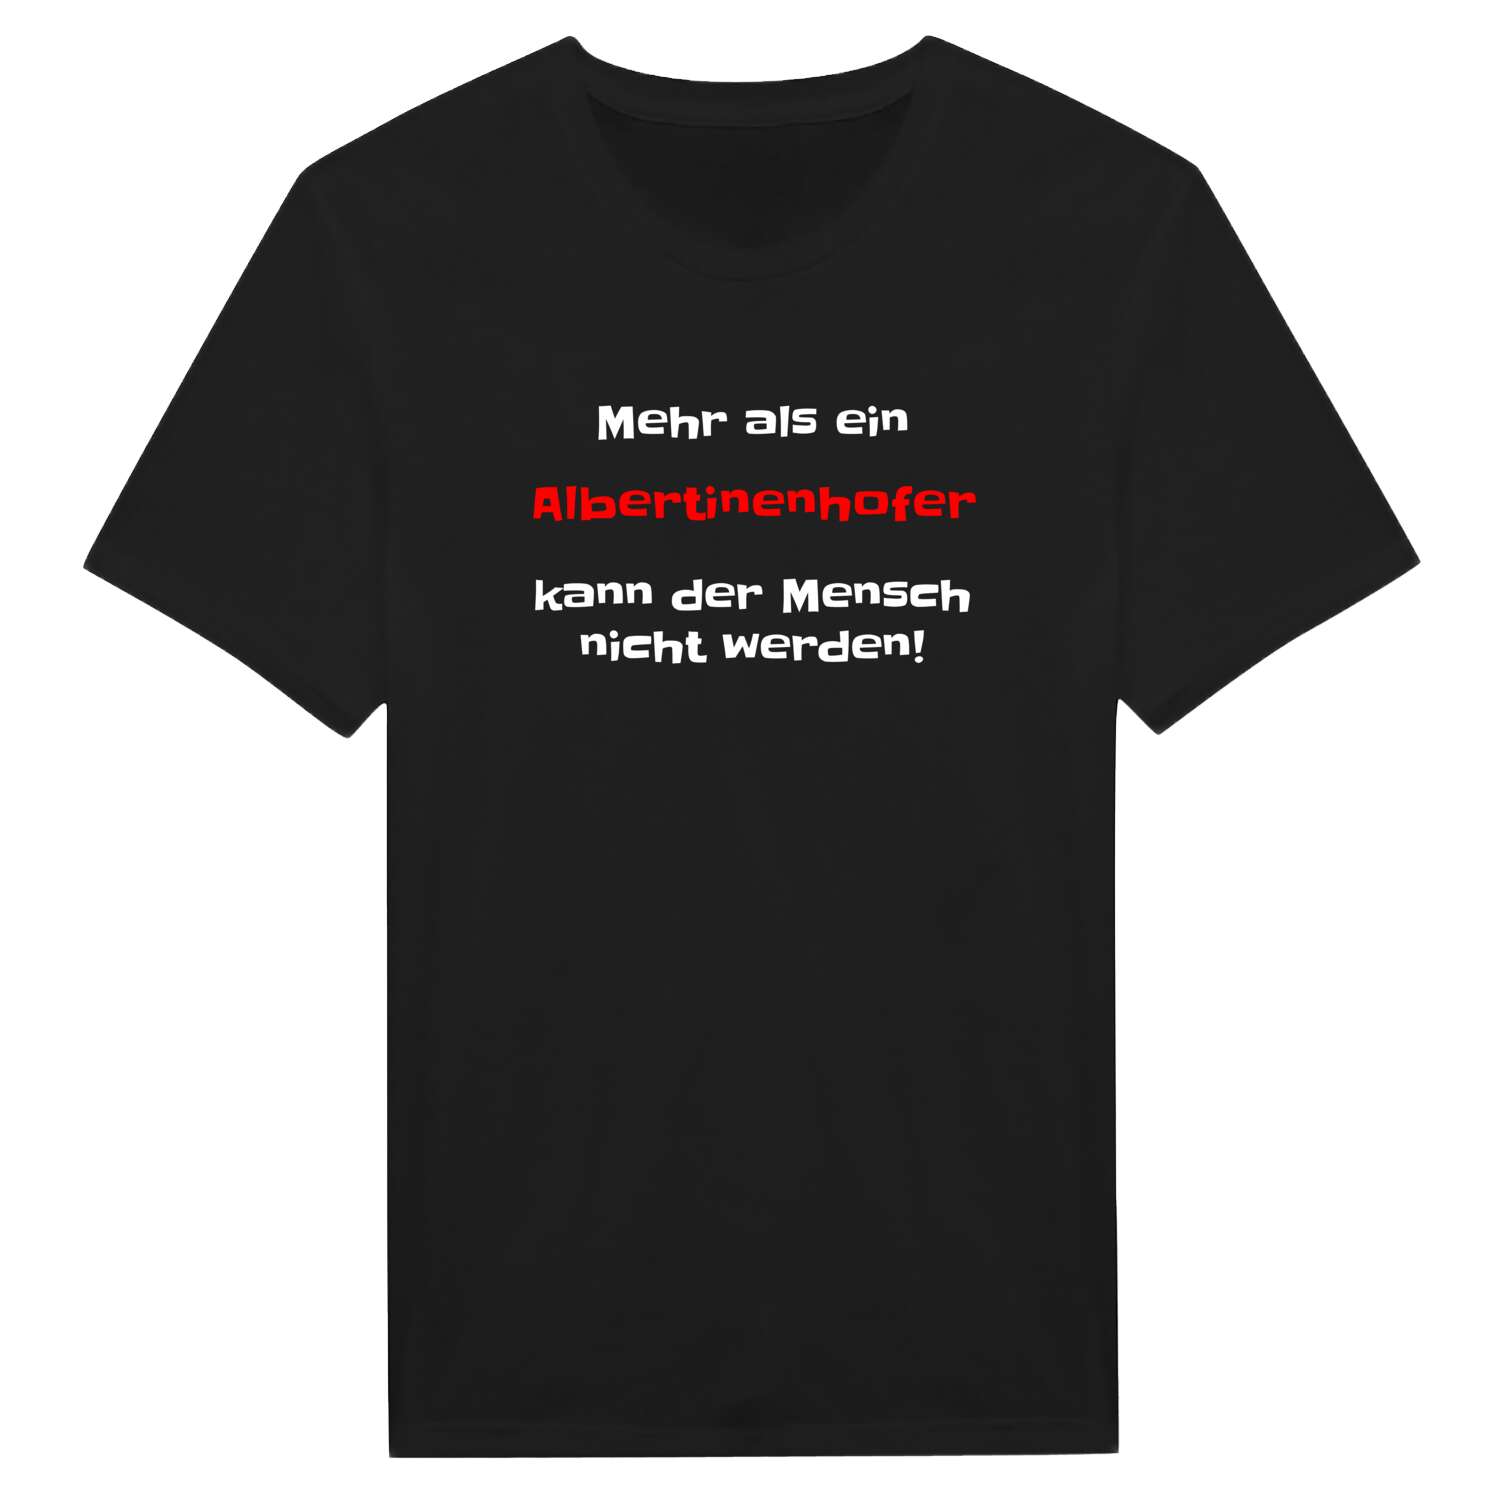 Albertinenhof T-Shirt »Mehr als ein«